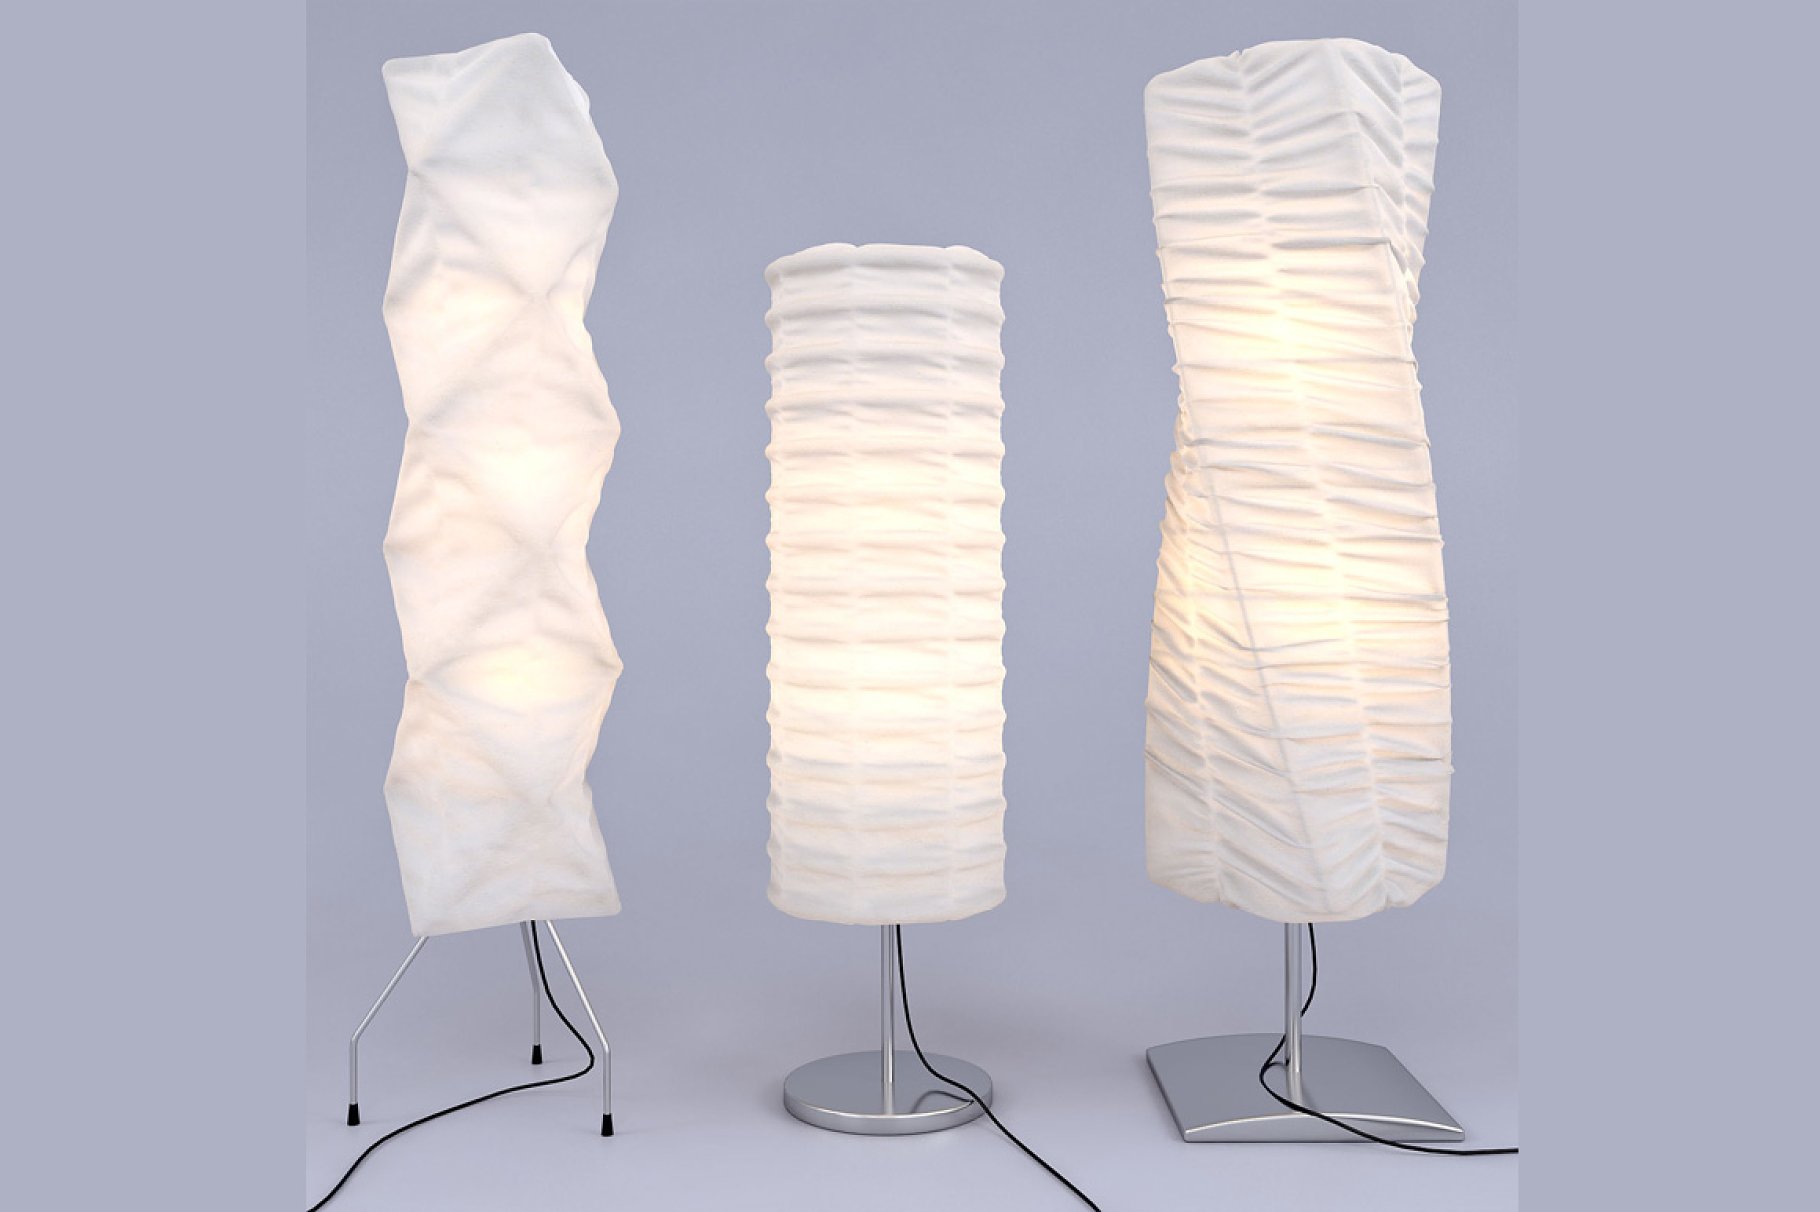 Exquisite 3d model rendering of floor lamps